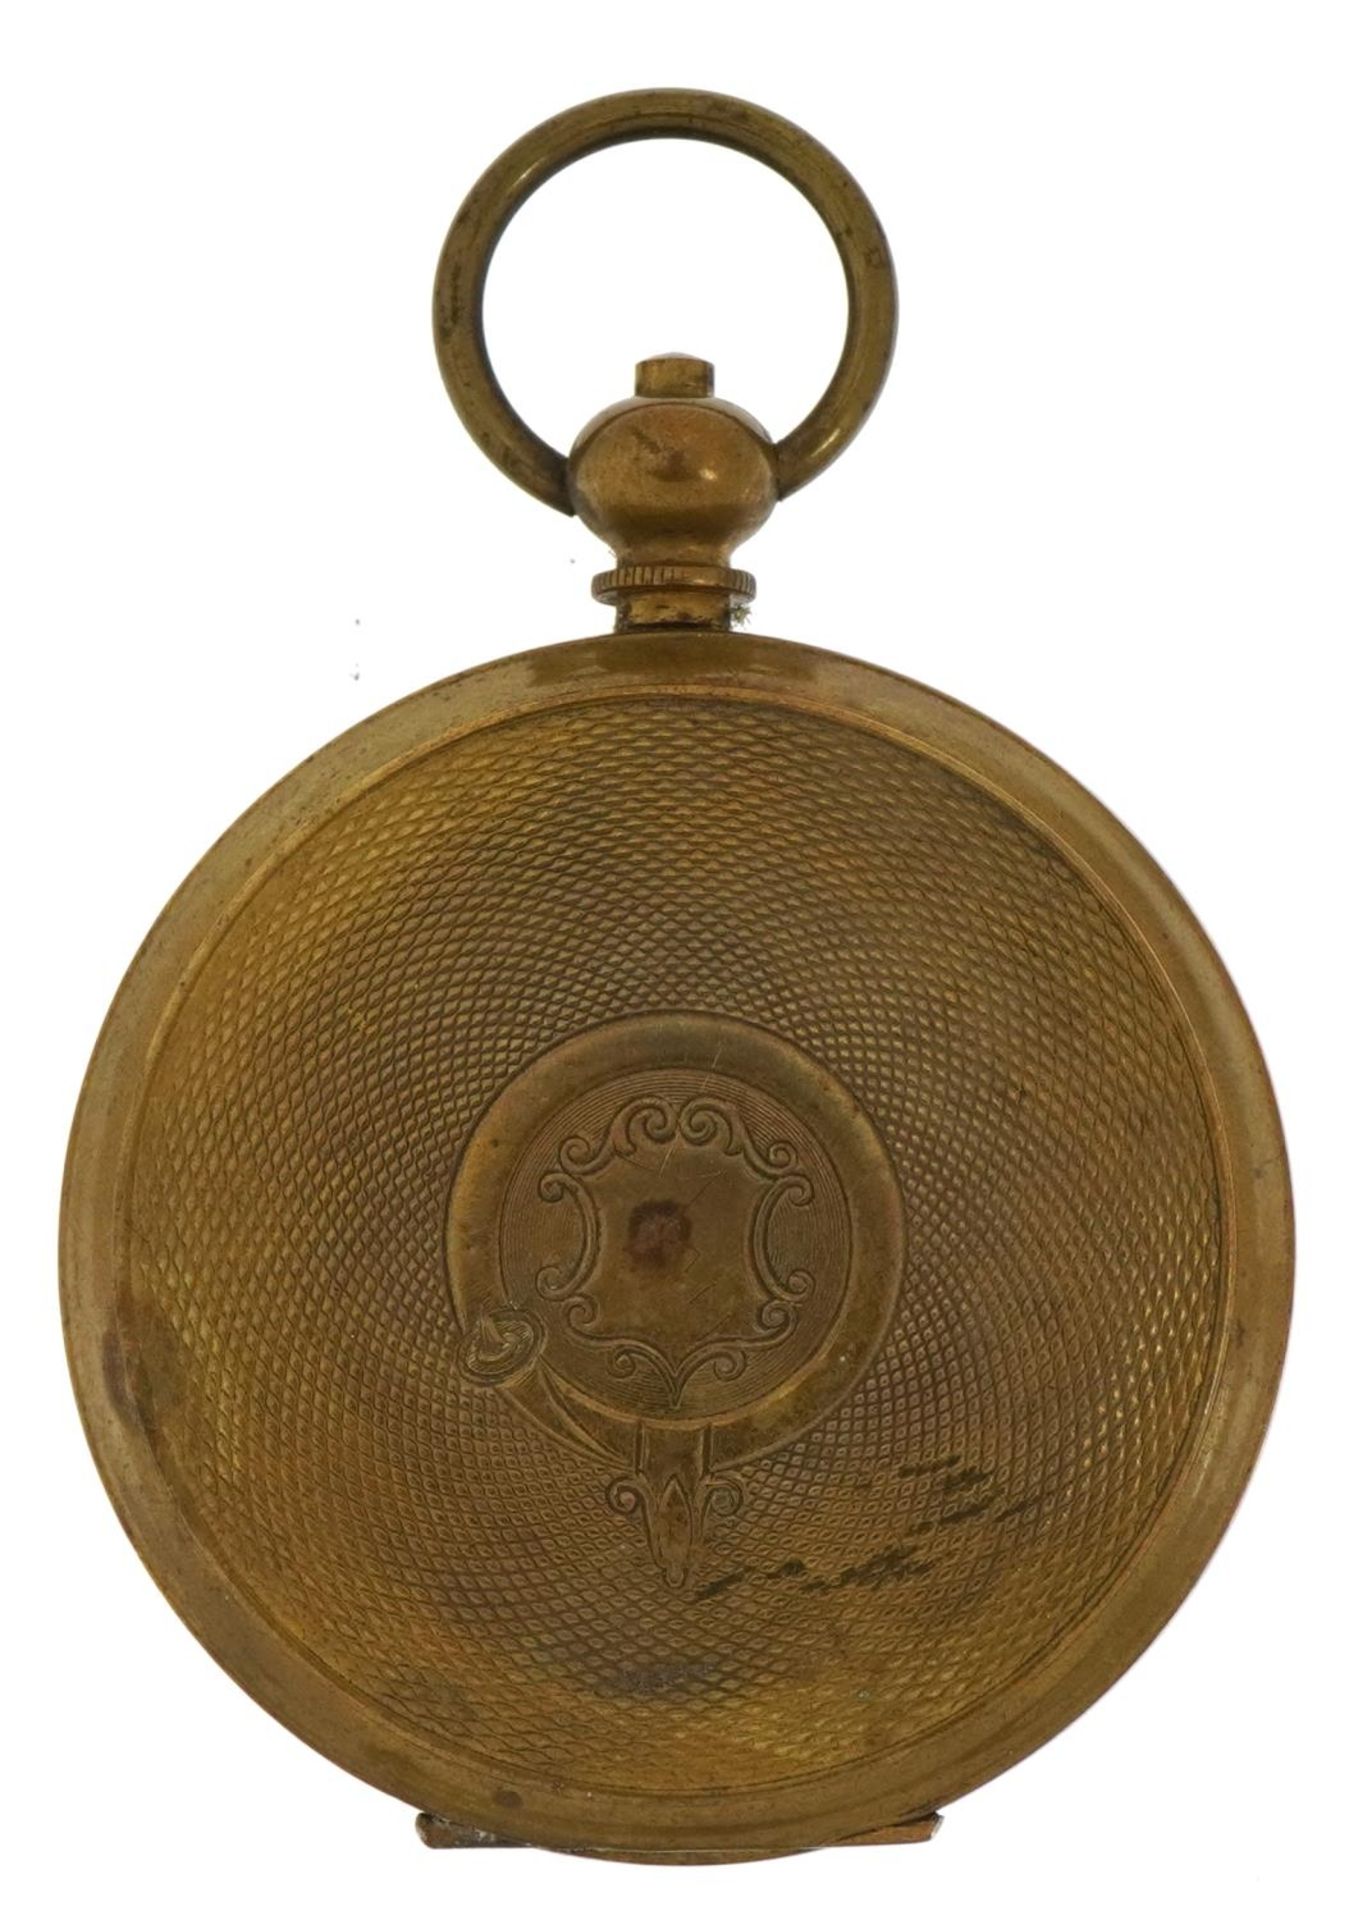 Gentlemen's Superior Railway Timekeeper open face pocket watch with enamelled dial, 53mm in diameter - Image 2 of 3